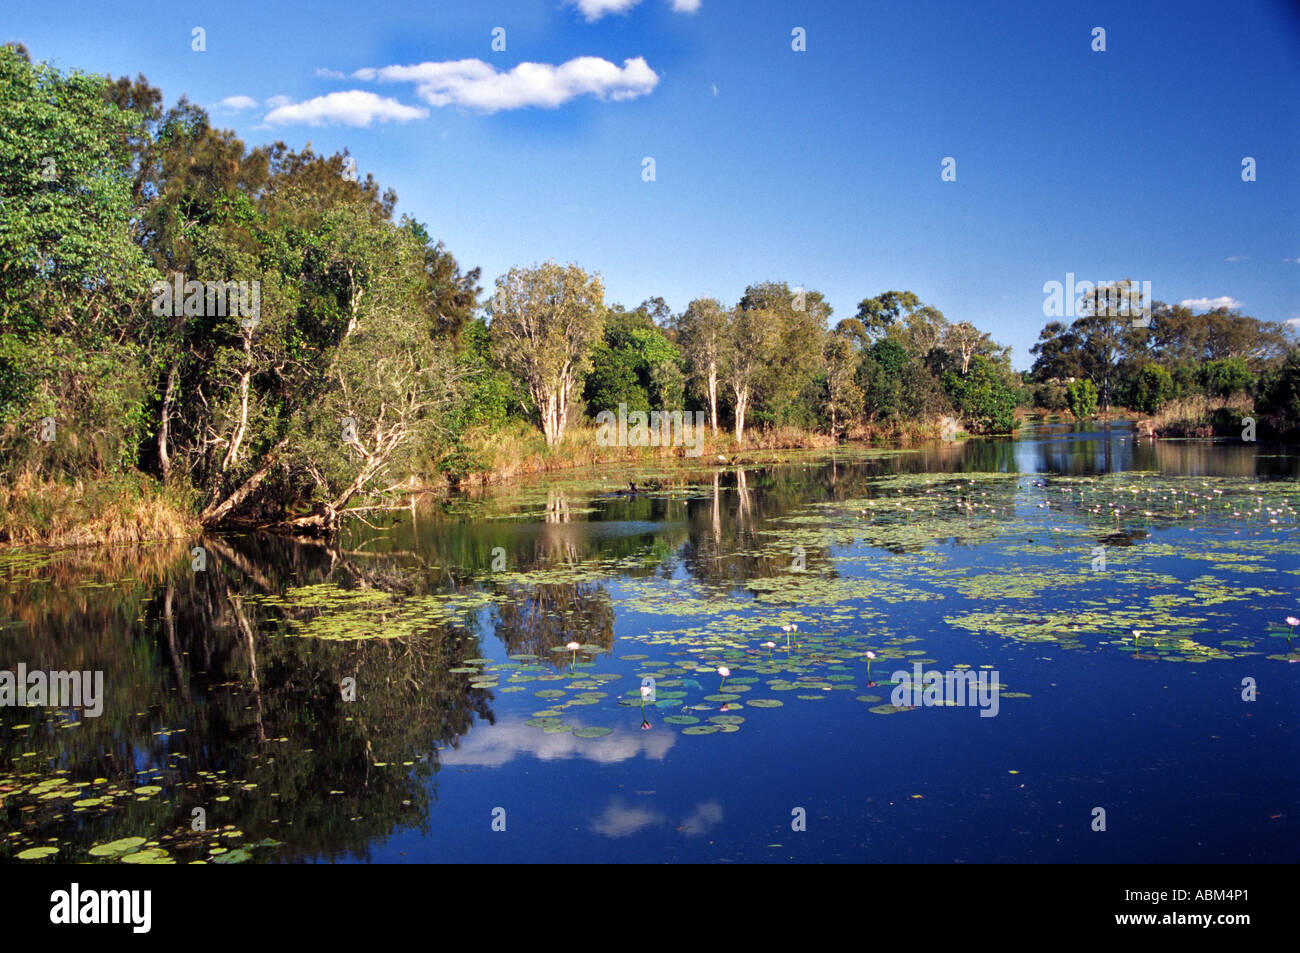 Les zones humides de Baldwin Swamp sont au cœur d'espaces verts dans la ville australienne de Bundaberg Banque D'Images